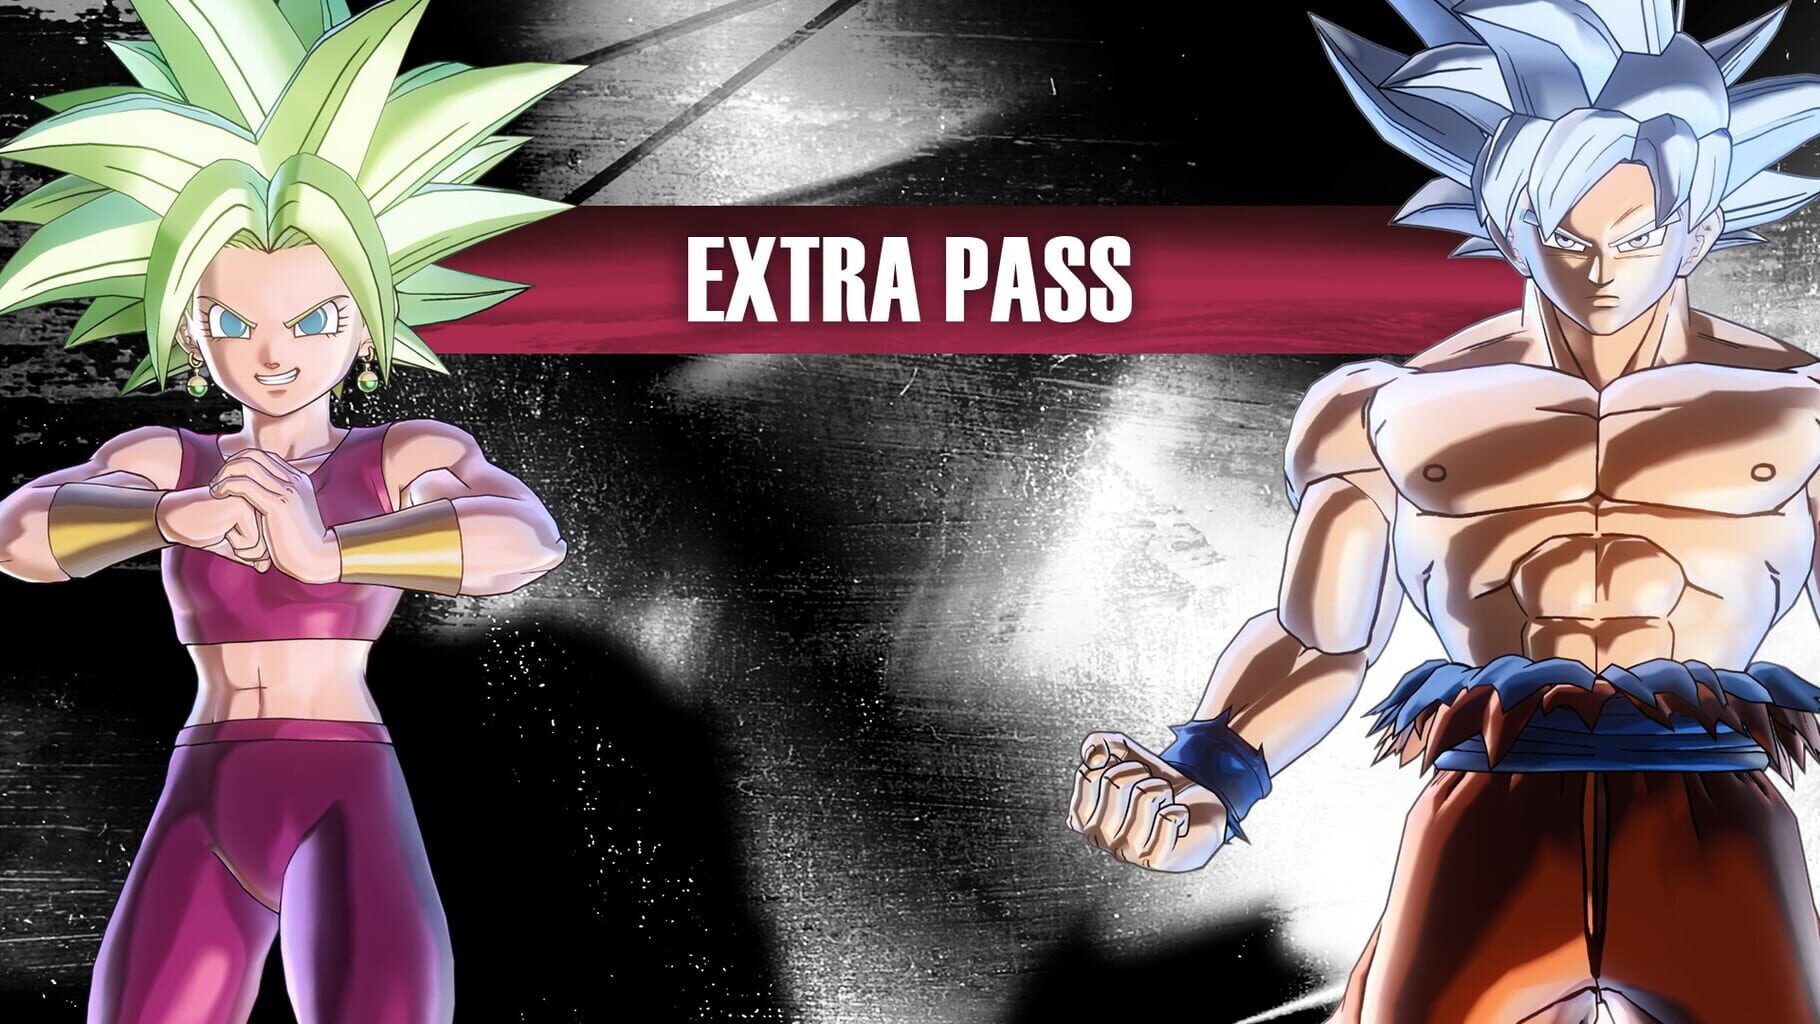 Arte - Dragon Ball: Xenoverse 2 - Extra Pass